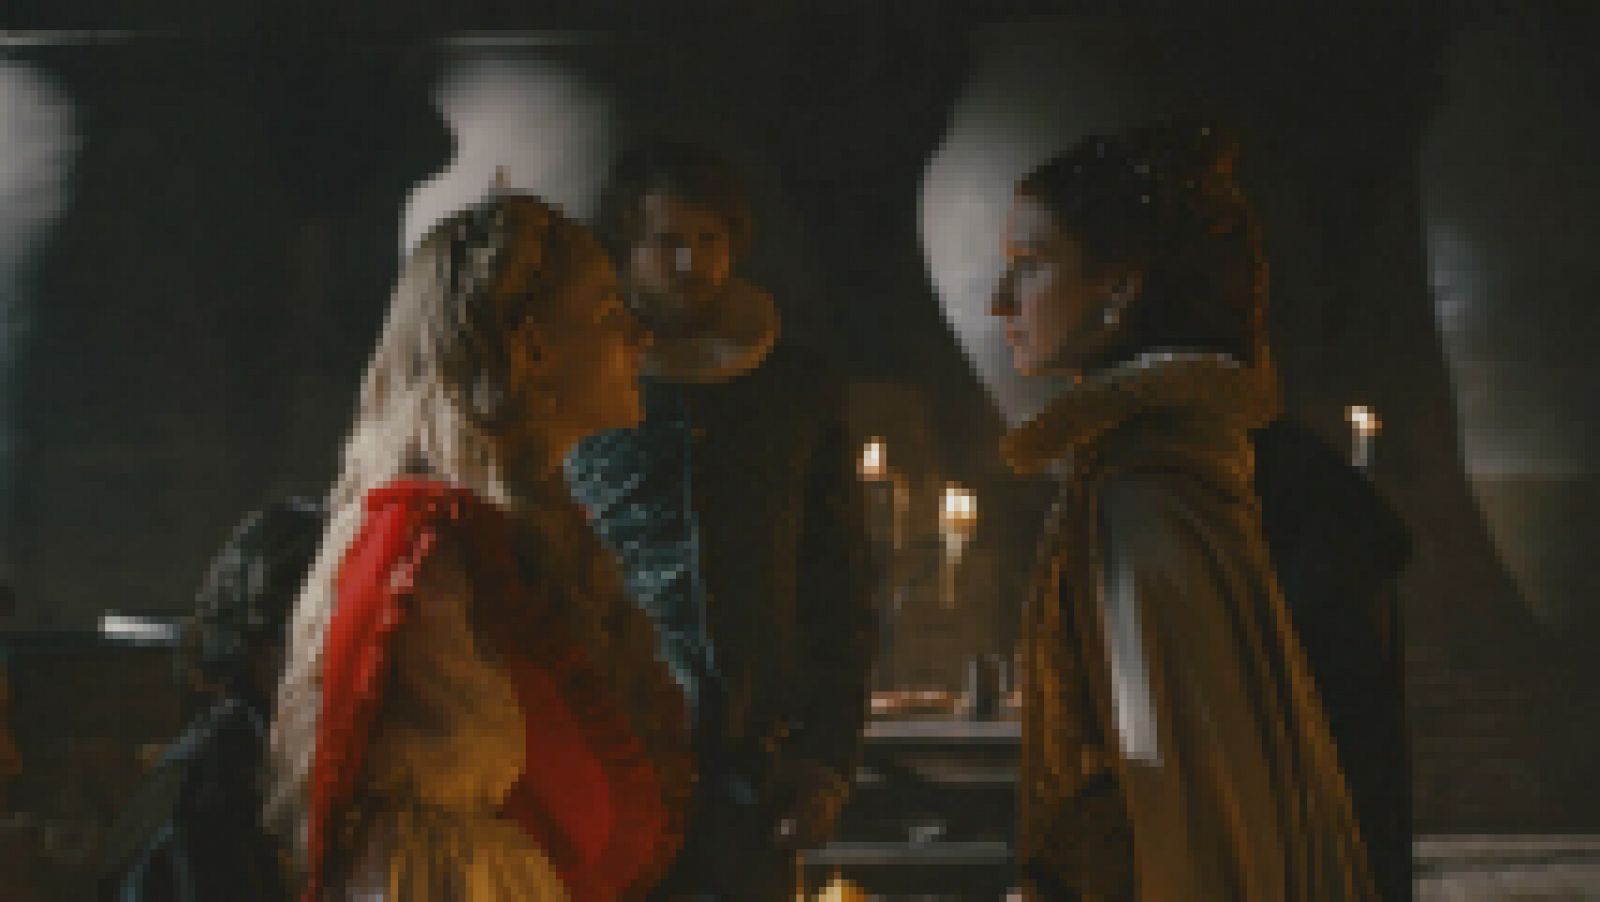 Reinas - El temido encuentro entre María Estuardo, reina de Escocia, e Isabel I, reina de Inglaterra